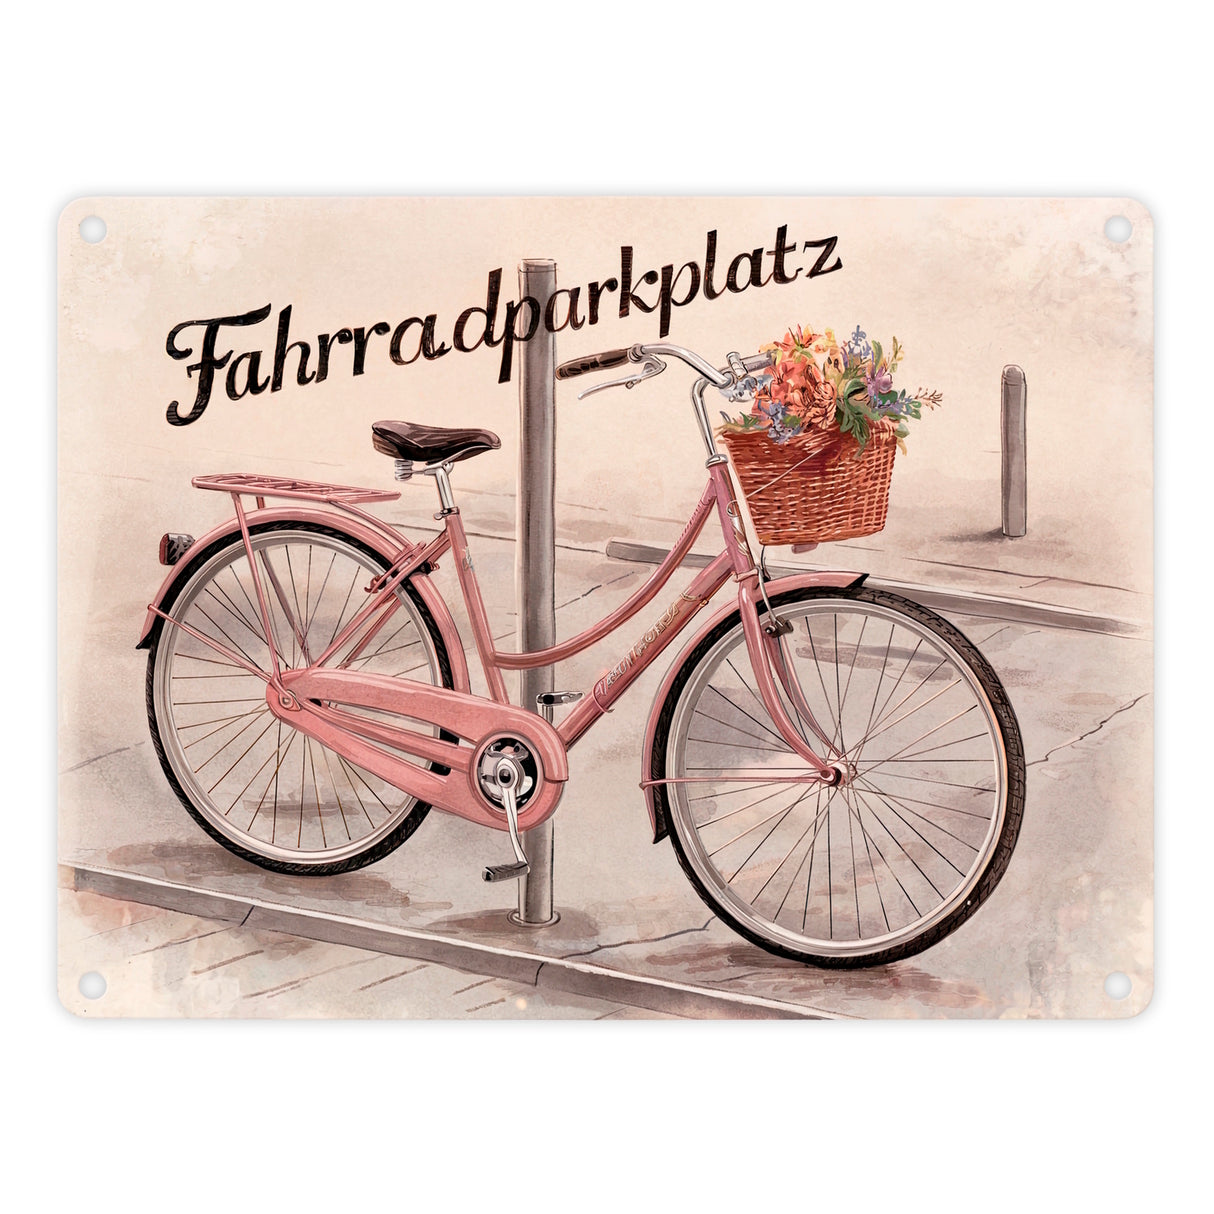 Fahrradparkplatz Metallschild in 15x20 cm mit rosa Drahtesel und Blumenkorb